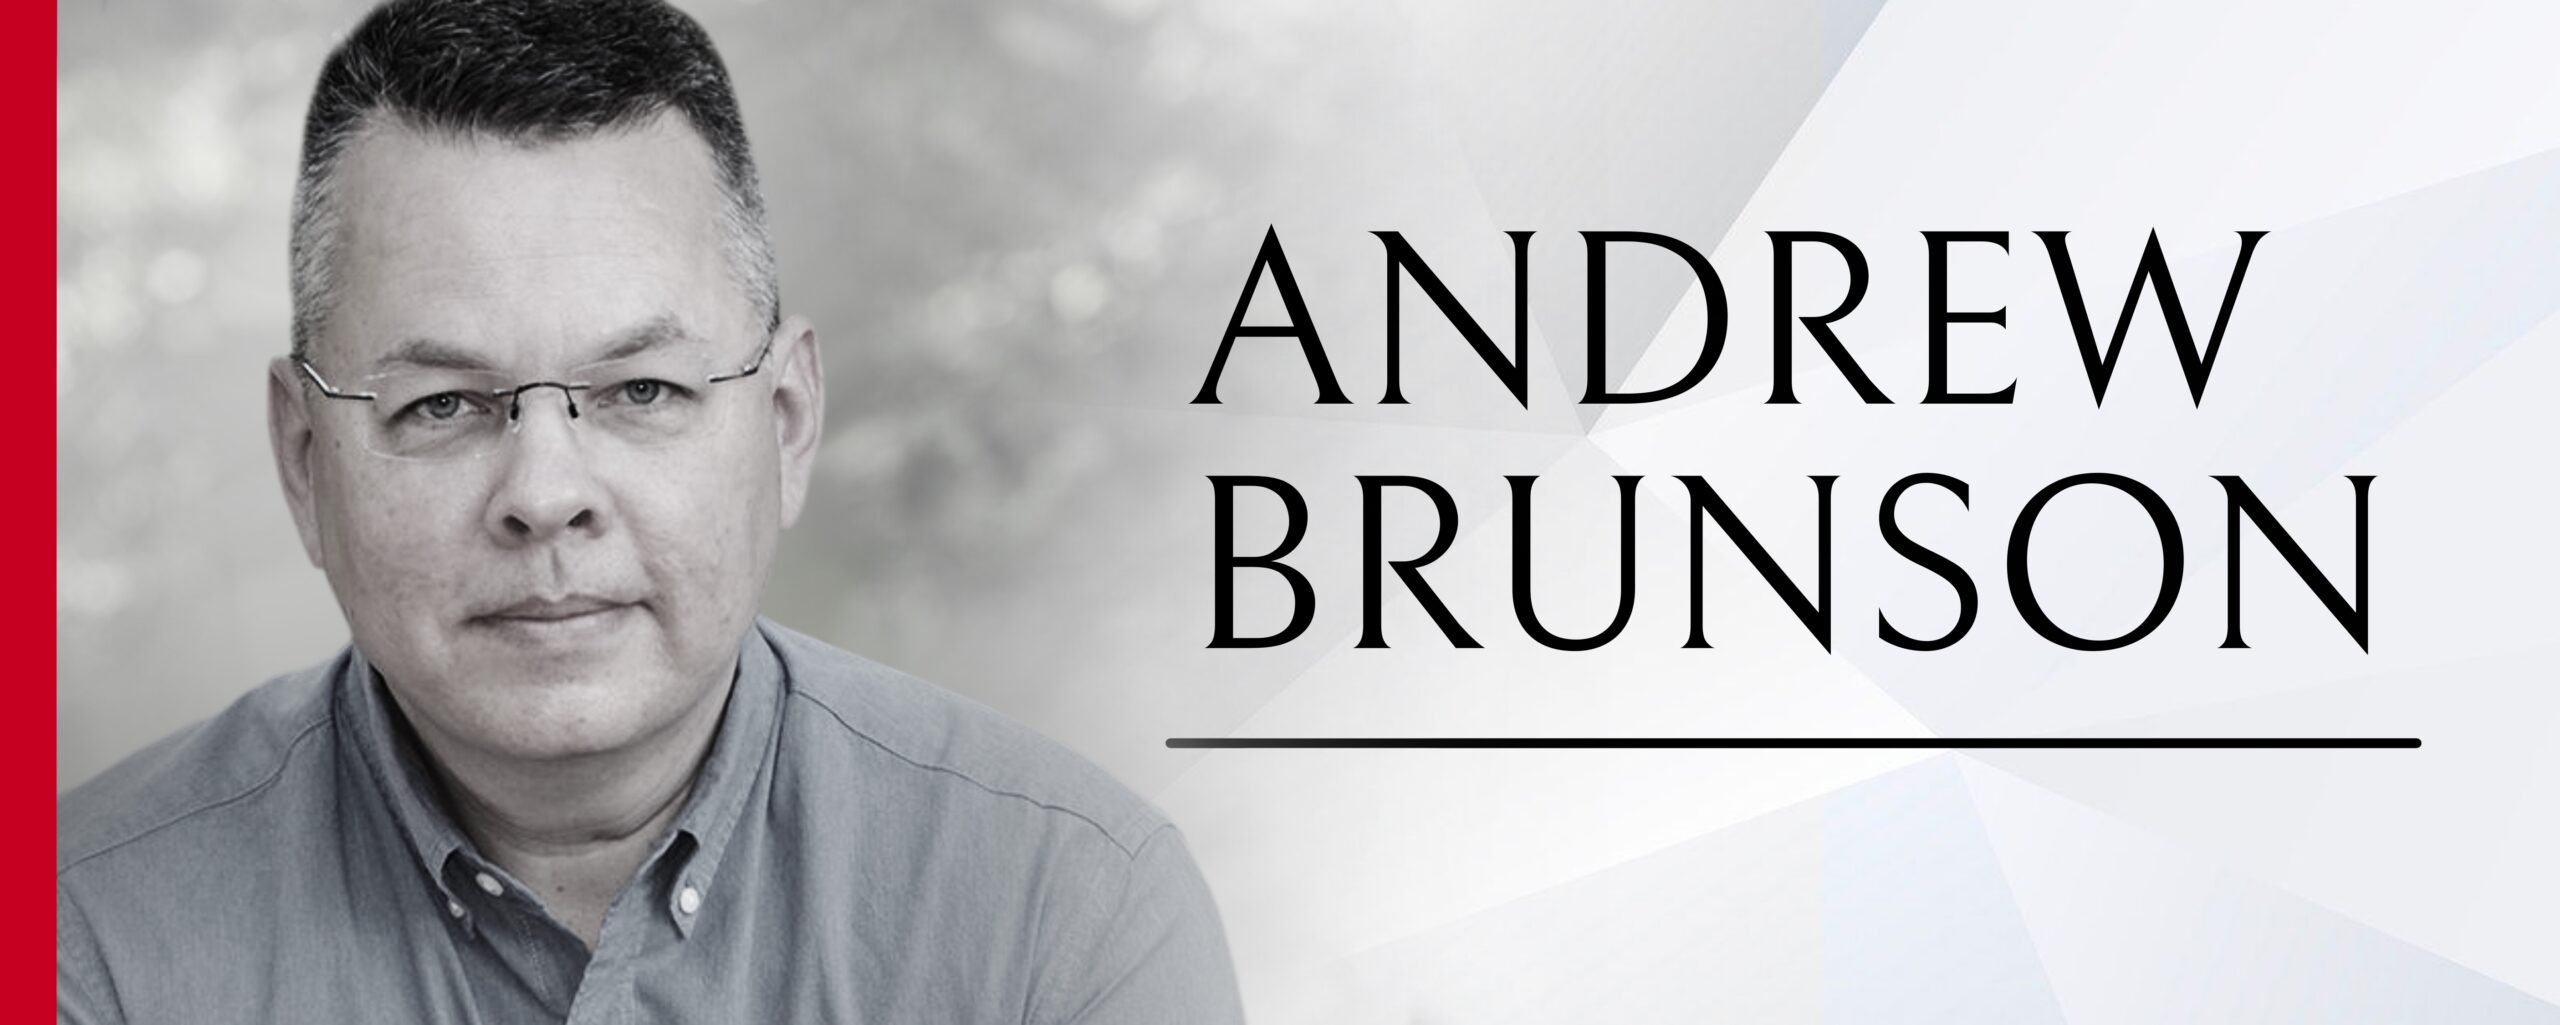 Andrew Brunson,Prepare To Stand,Andrew Brunson Prepare To Stand,Persecution